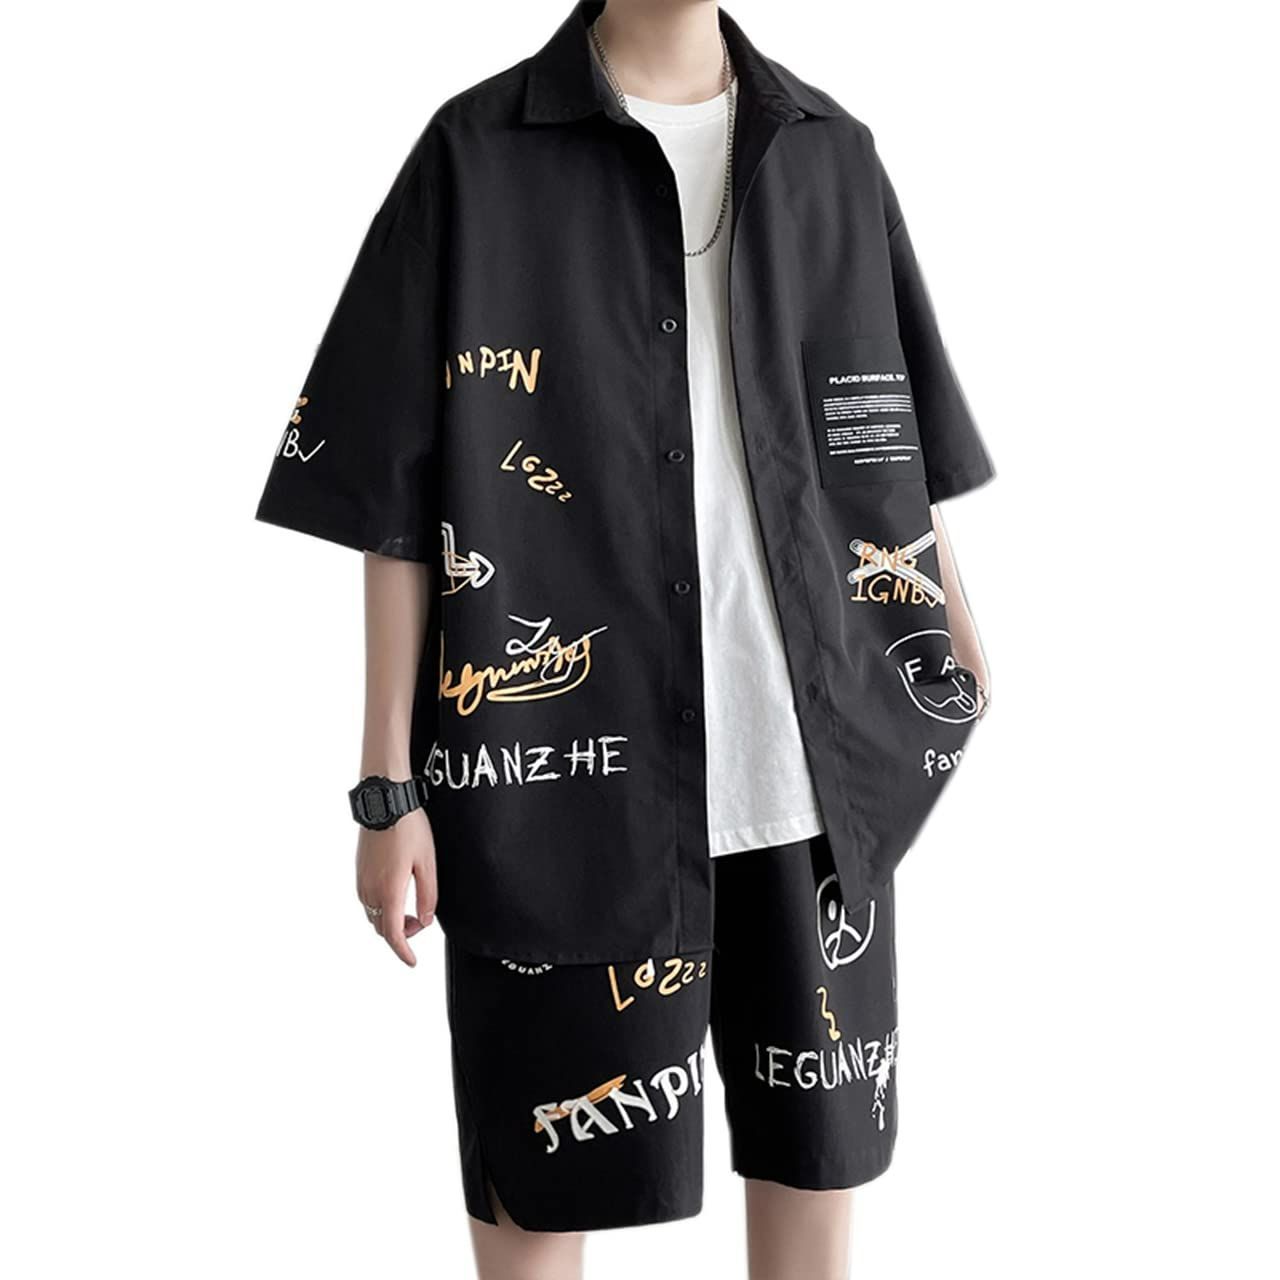 XL_ブラック [ANGELCITY] 夏 セットアップ メンズ 半袖Tシャツ ハーフパンツ 上下セット ジャージ Tシャツ ショットパンツ  2点セット 部屋着 夏服 スポーツウェア ルームウェア 韓国 おしゃれ 大きいサイズ L223 (XL